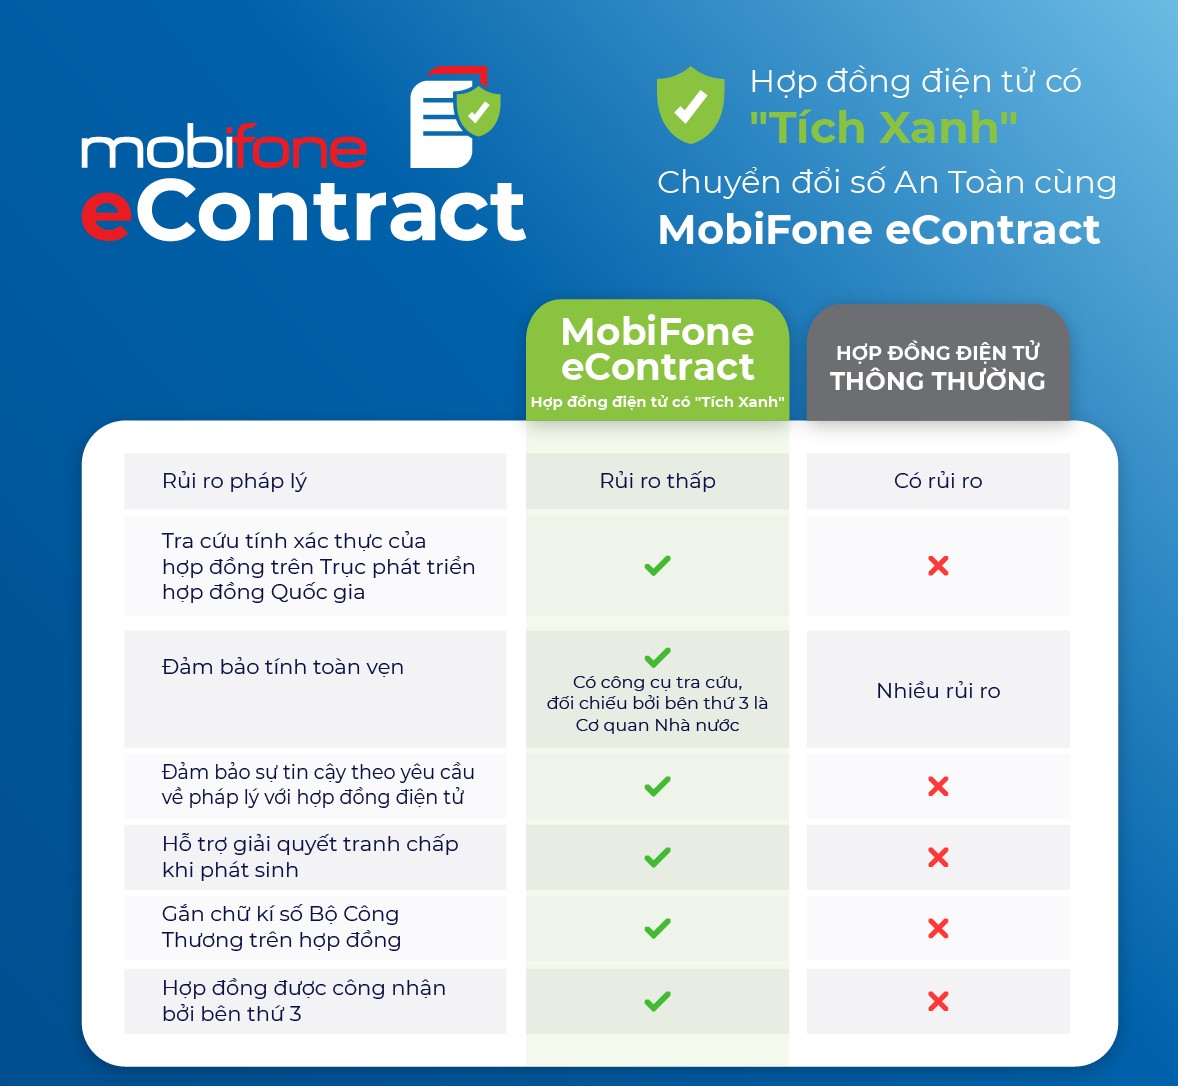 Hợp đồng điện tử có tích xanh của MobiFone - Giao dịch nhanh chóng, tiện lợi! - 1